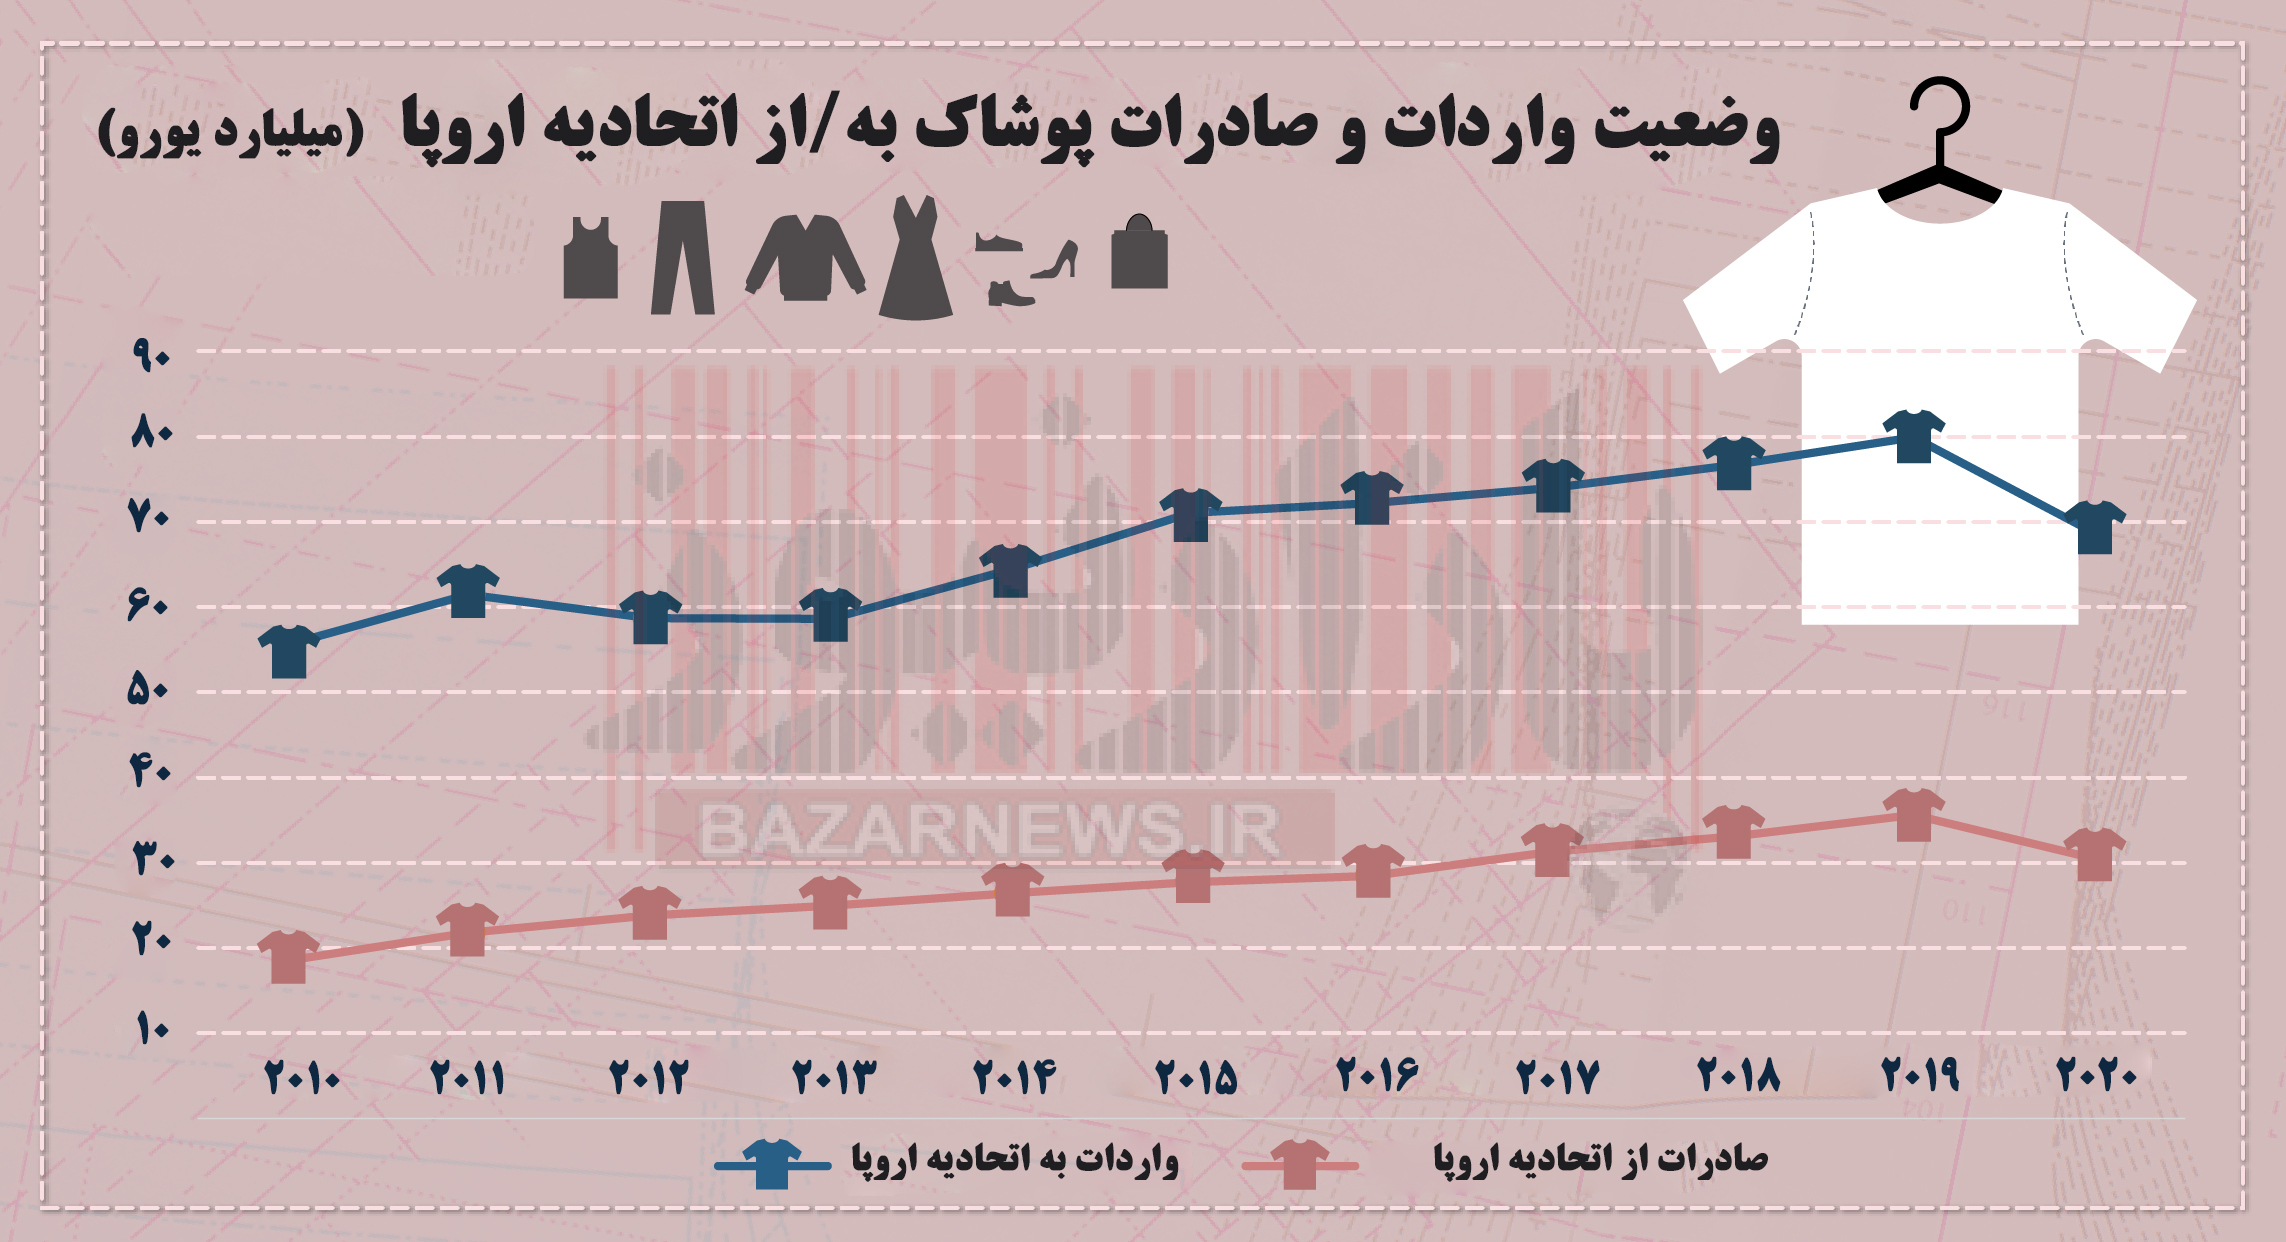 بررسی وضعیت صادرات پوشاک در دنیا/ سهم کمتر از 0.1 درصدی ایران